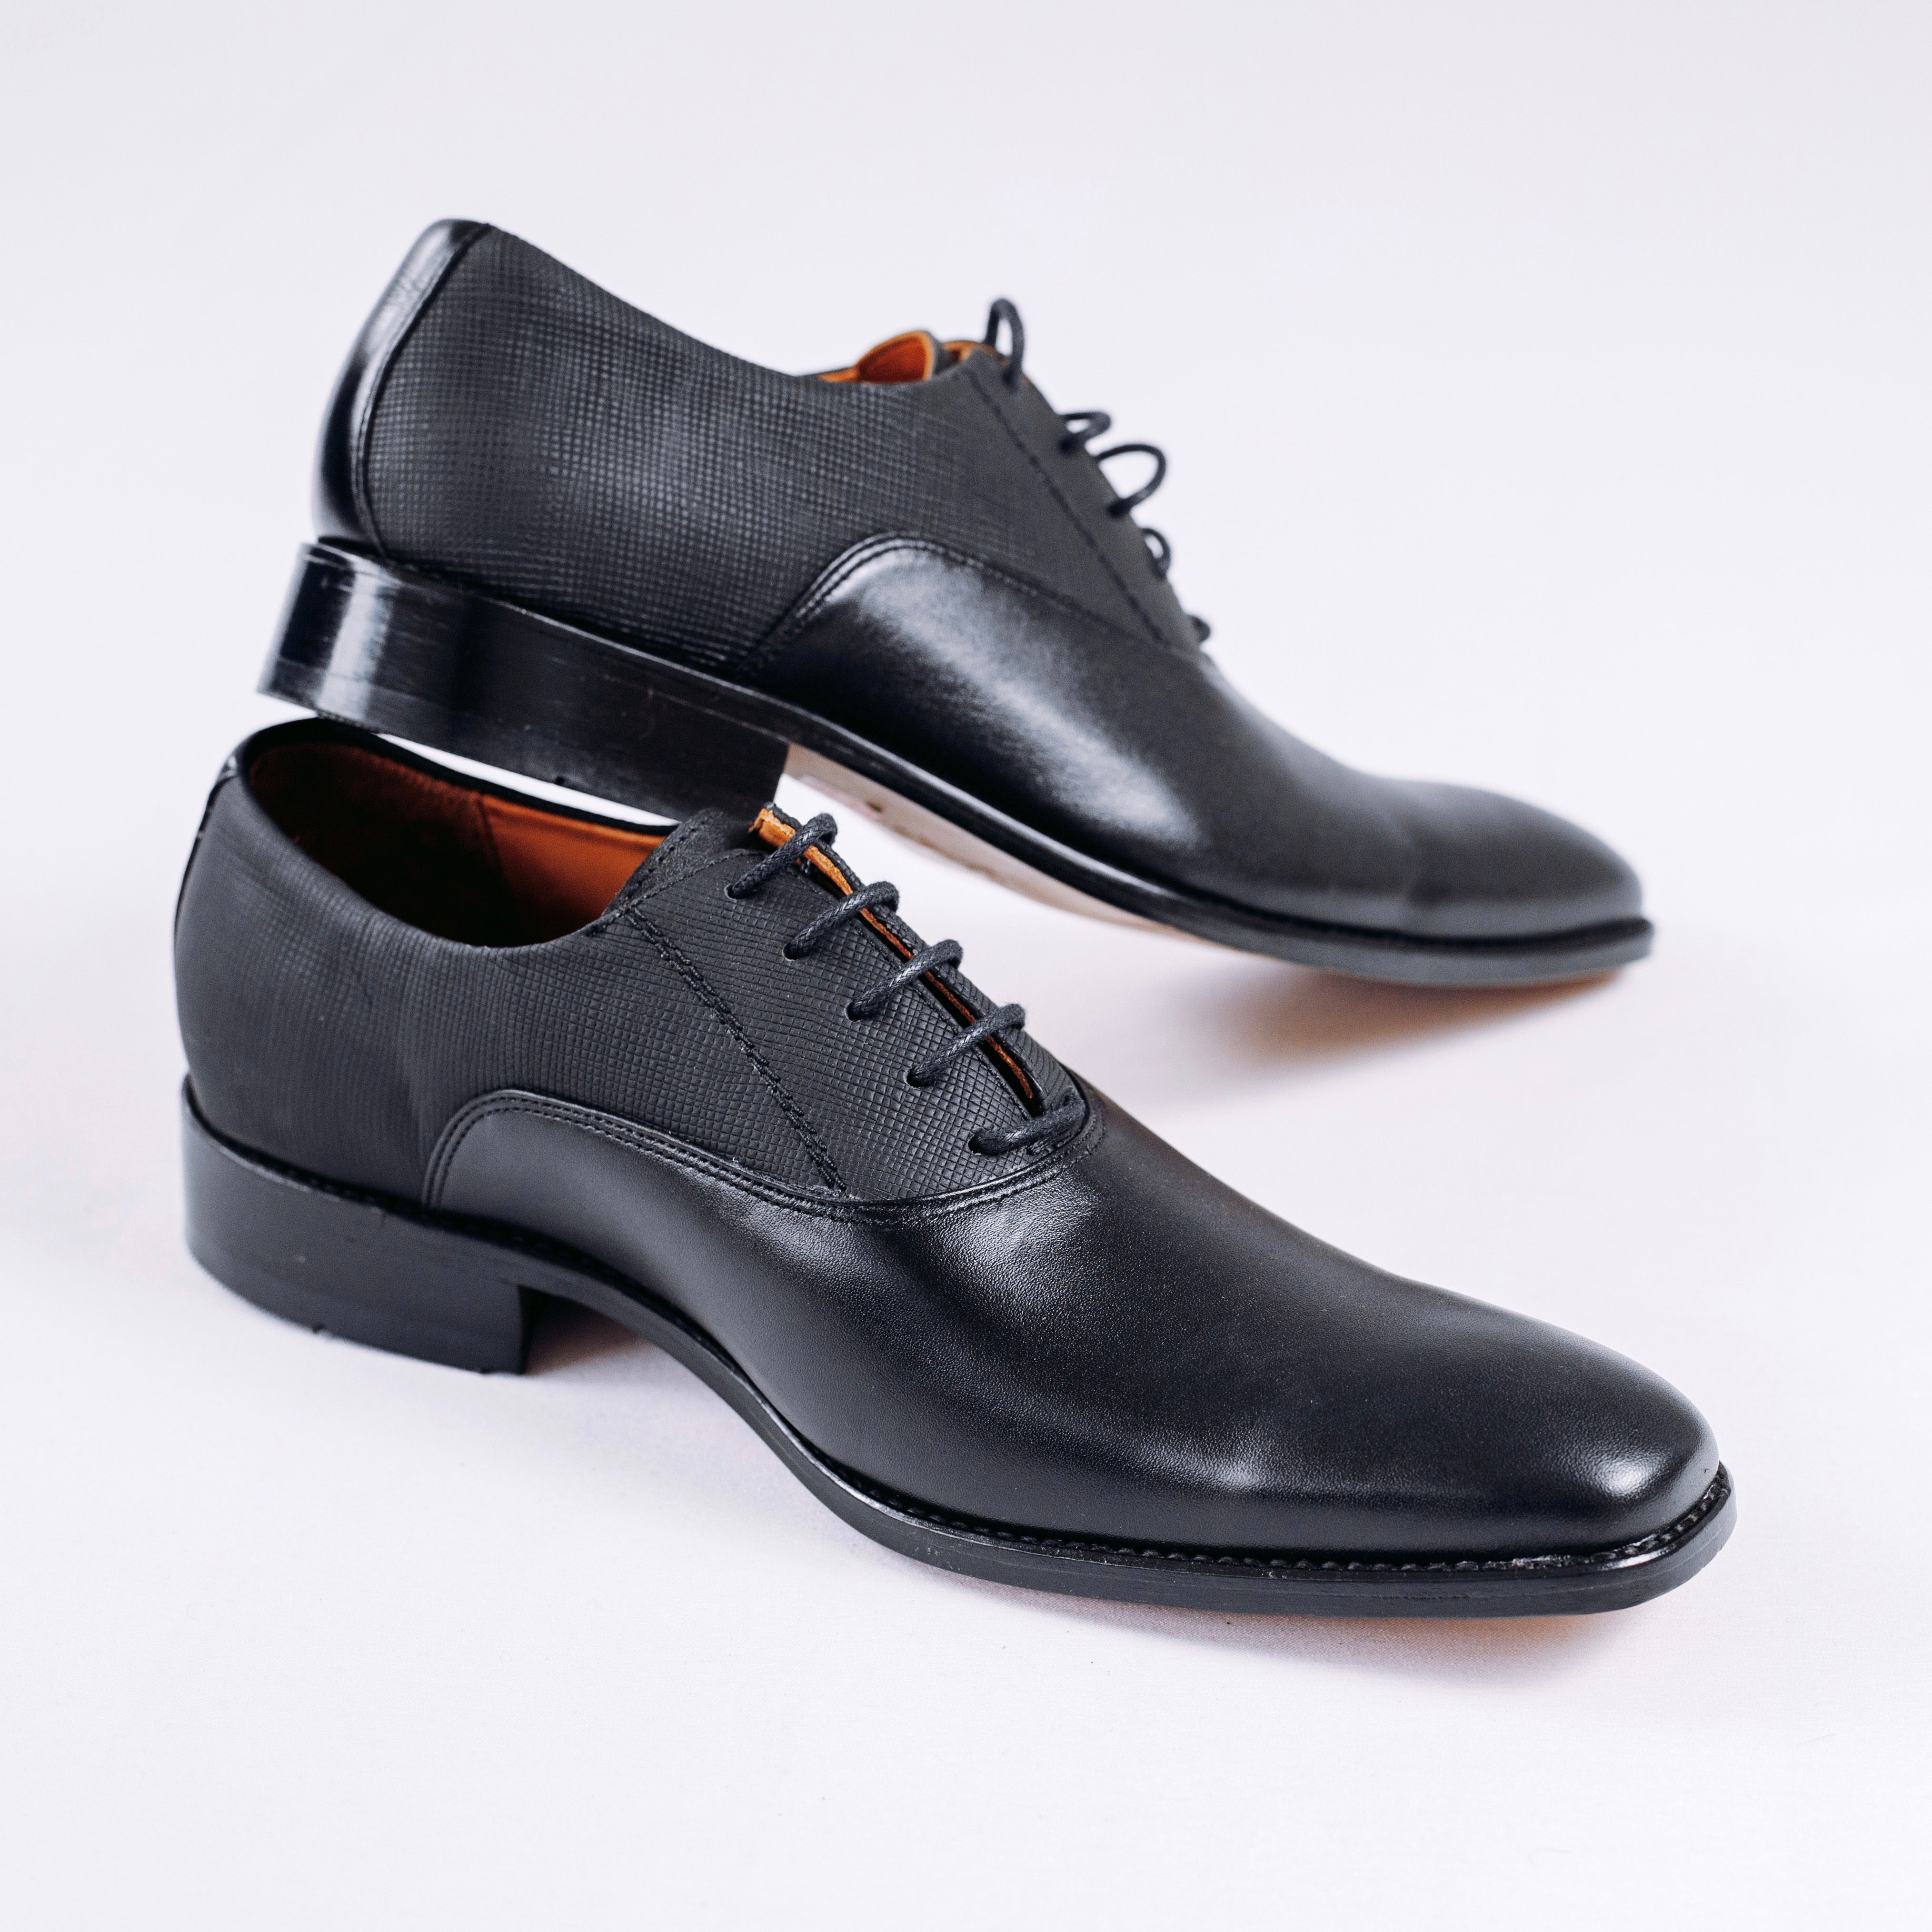 Zapato piel formal negro combinado textura